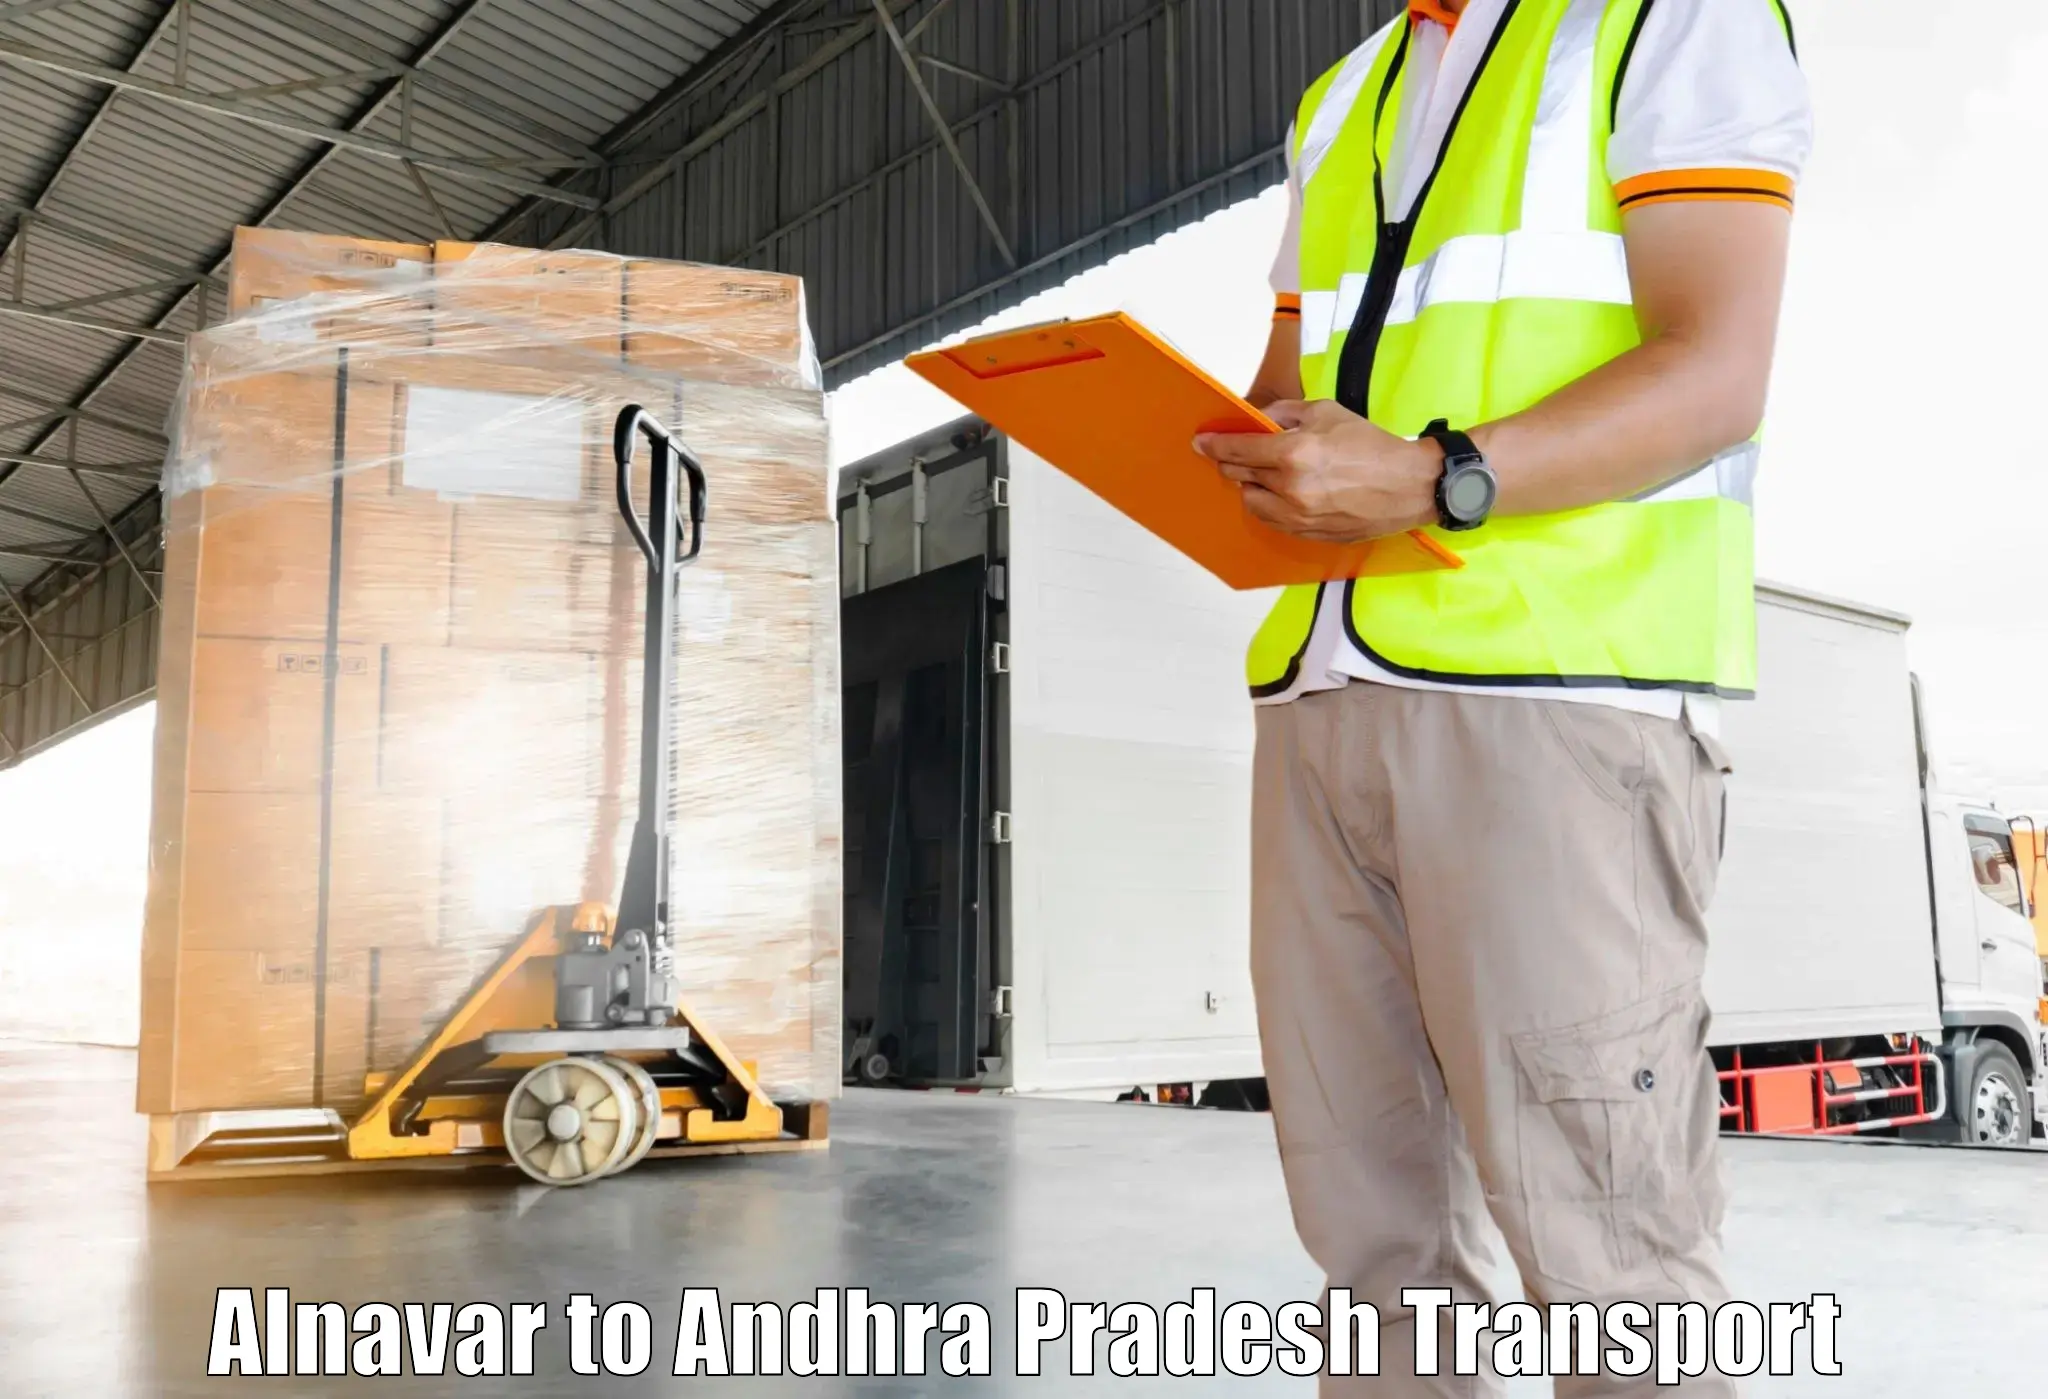 Parcel transport services Alnavar to Kothapalli